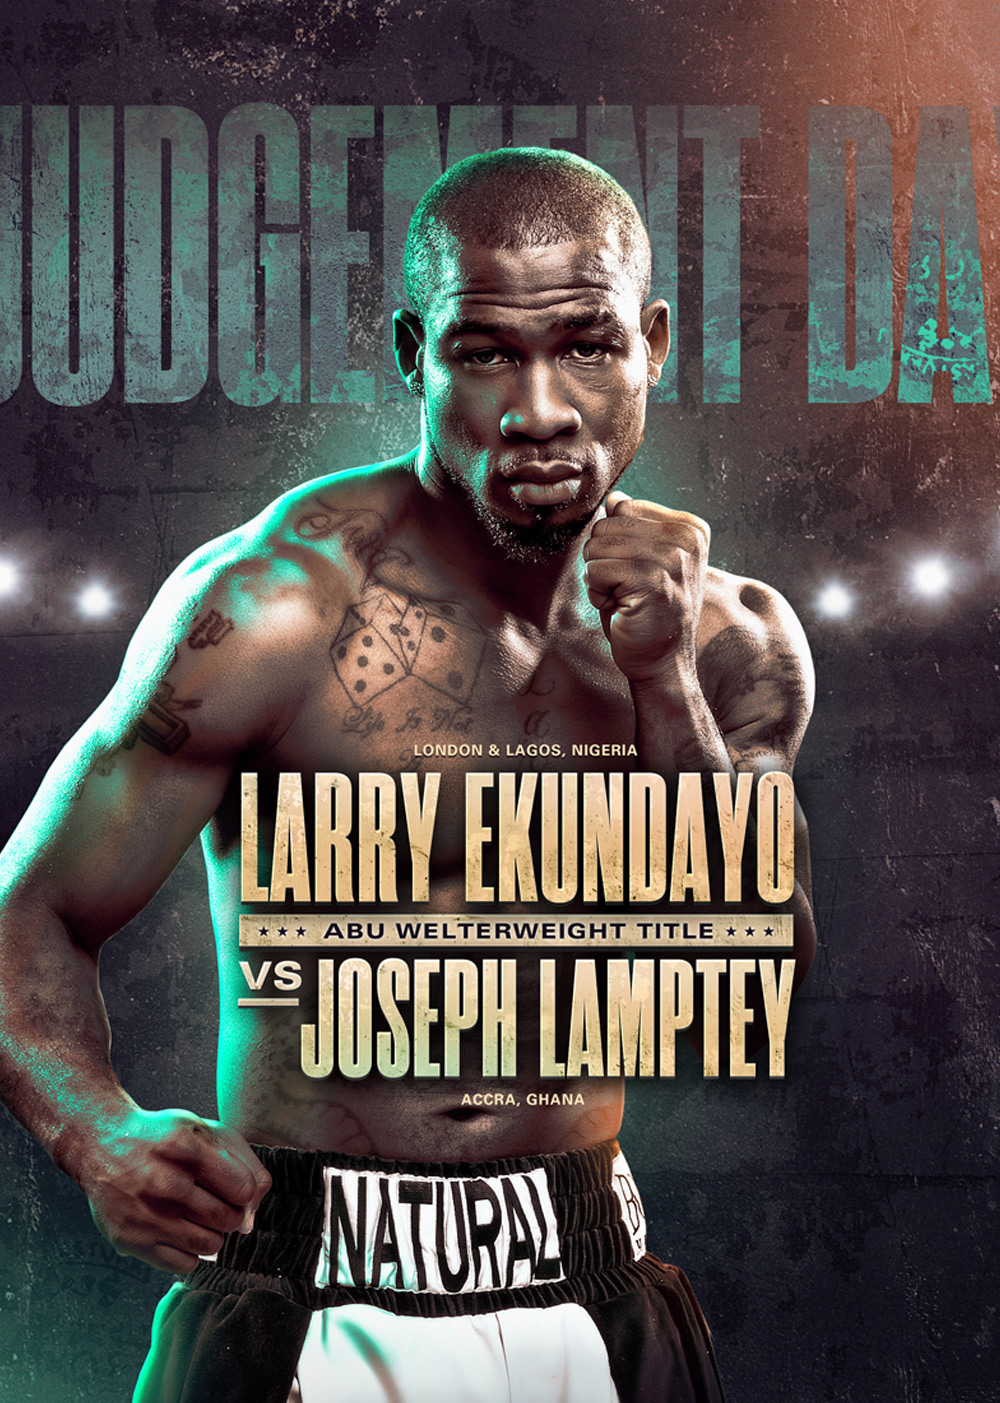 larry ekundayo boxing poster design